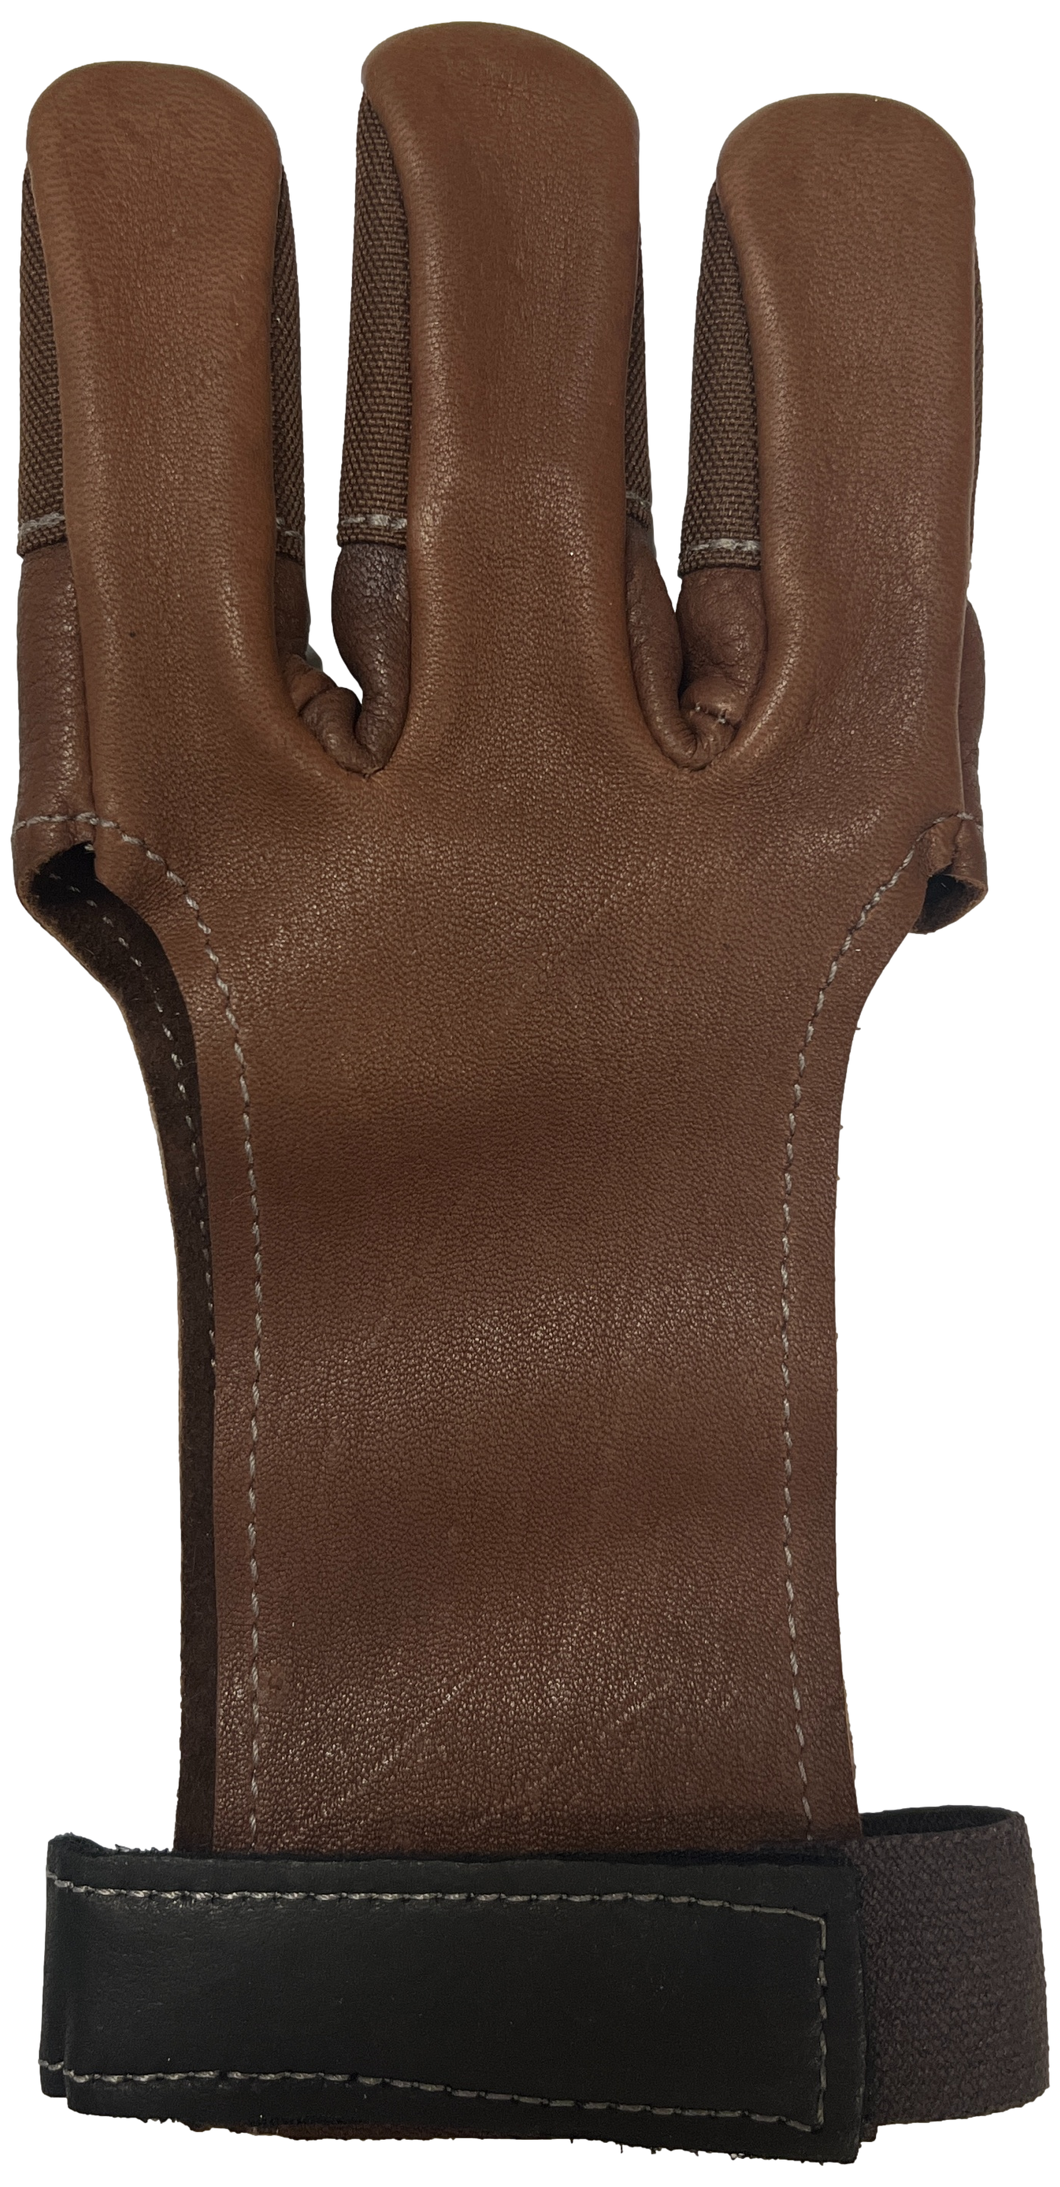 Dura Glove